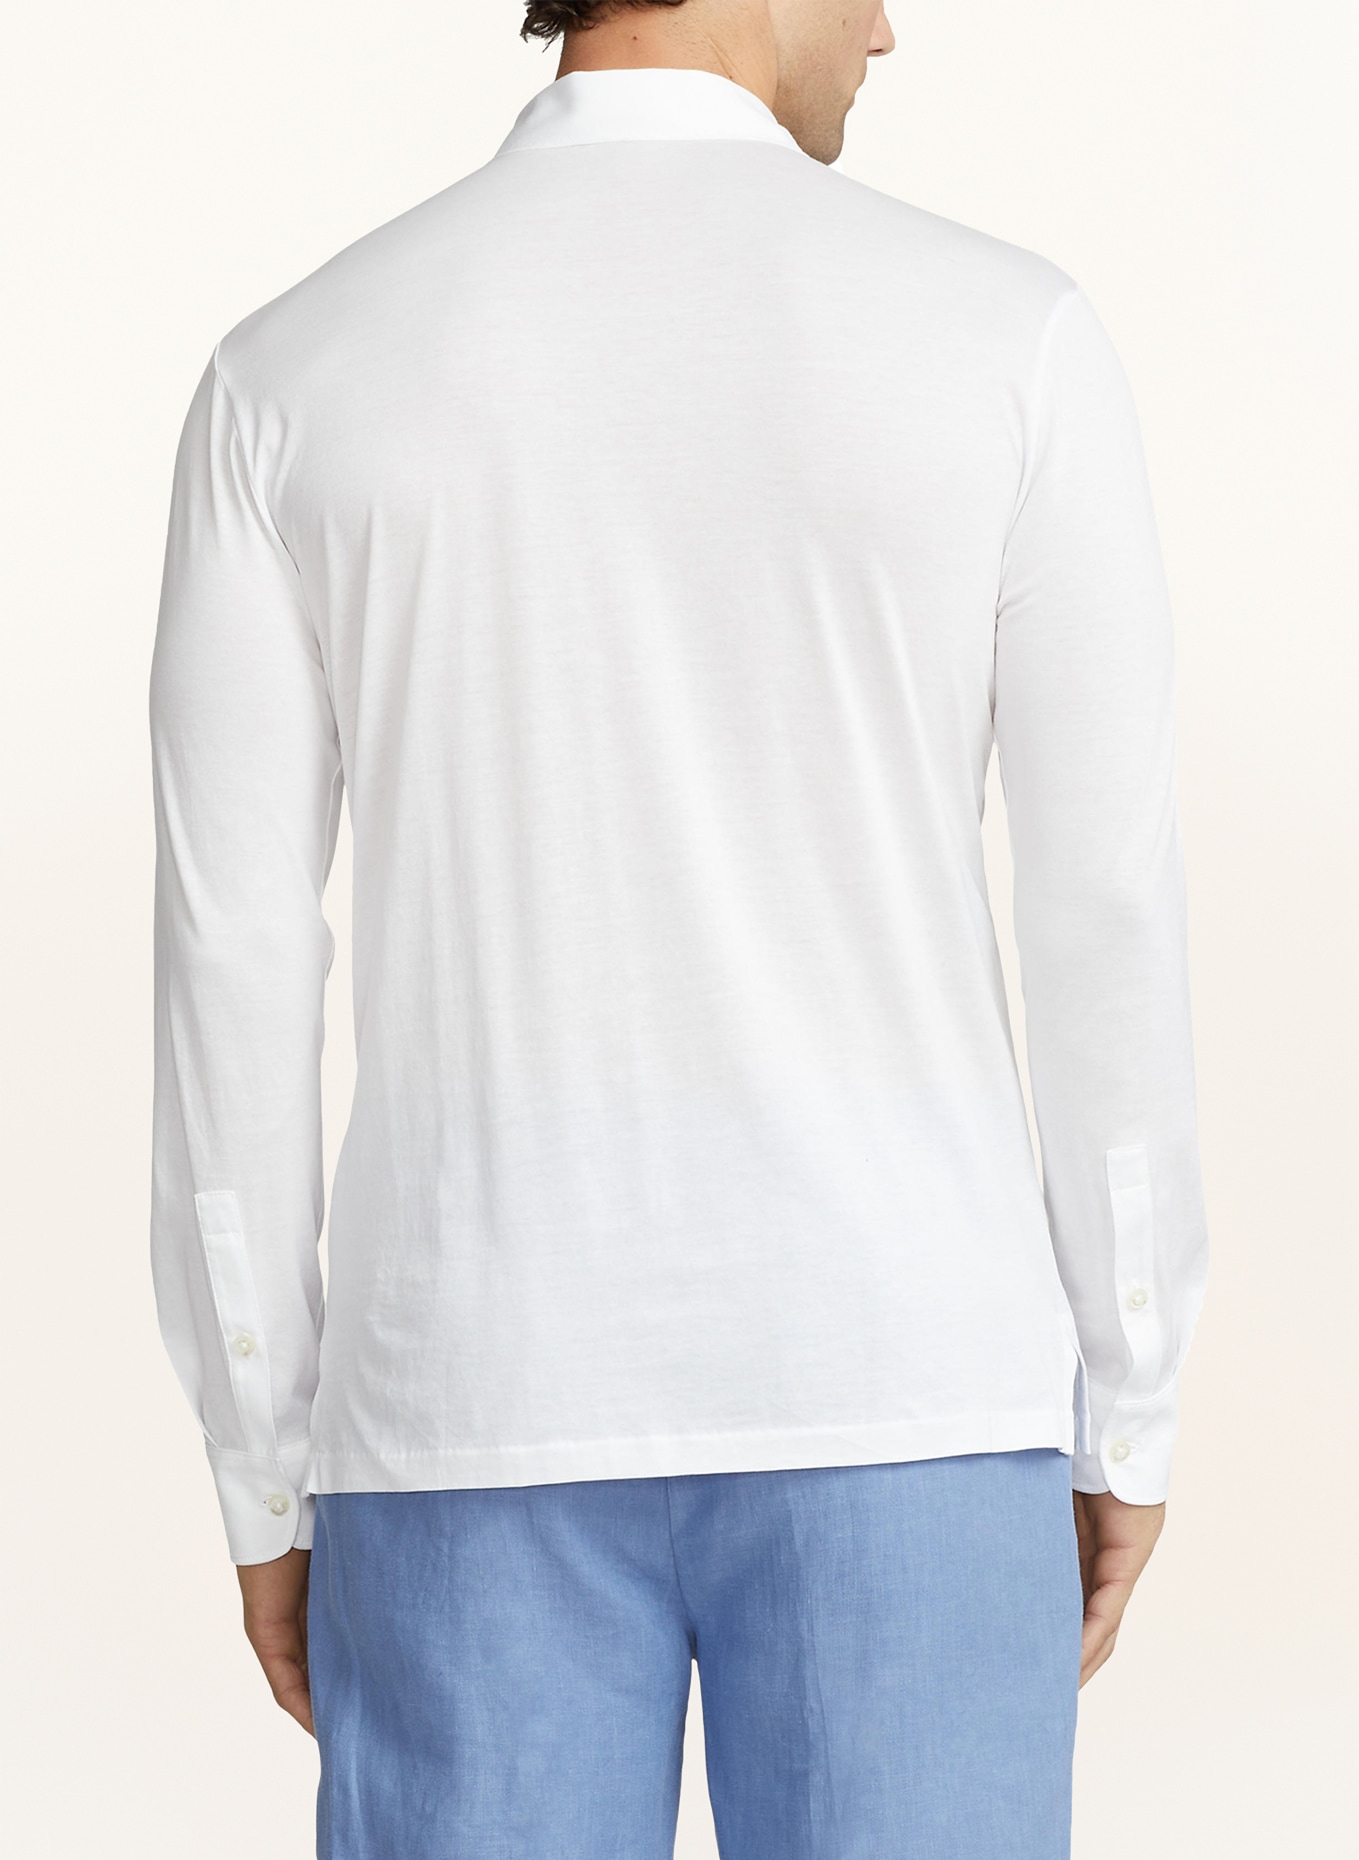 RALPH LAUREN PURPLE LABEL Jersey polo shirt, Color: WHITE (Image 3)